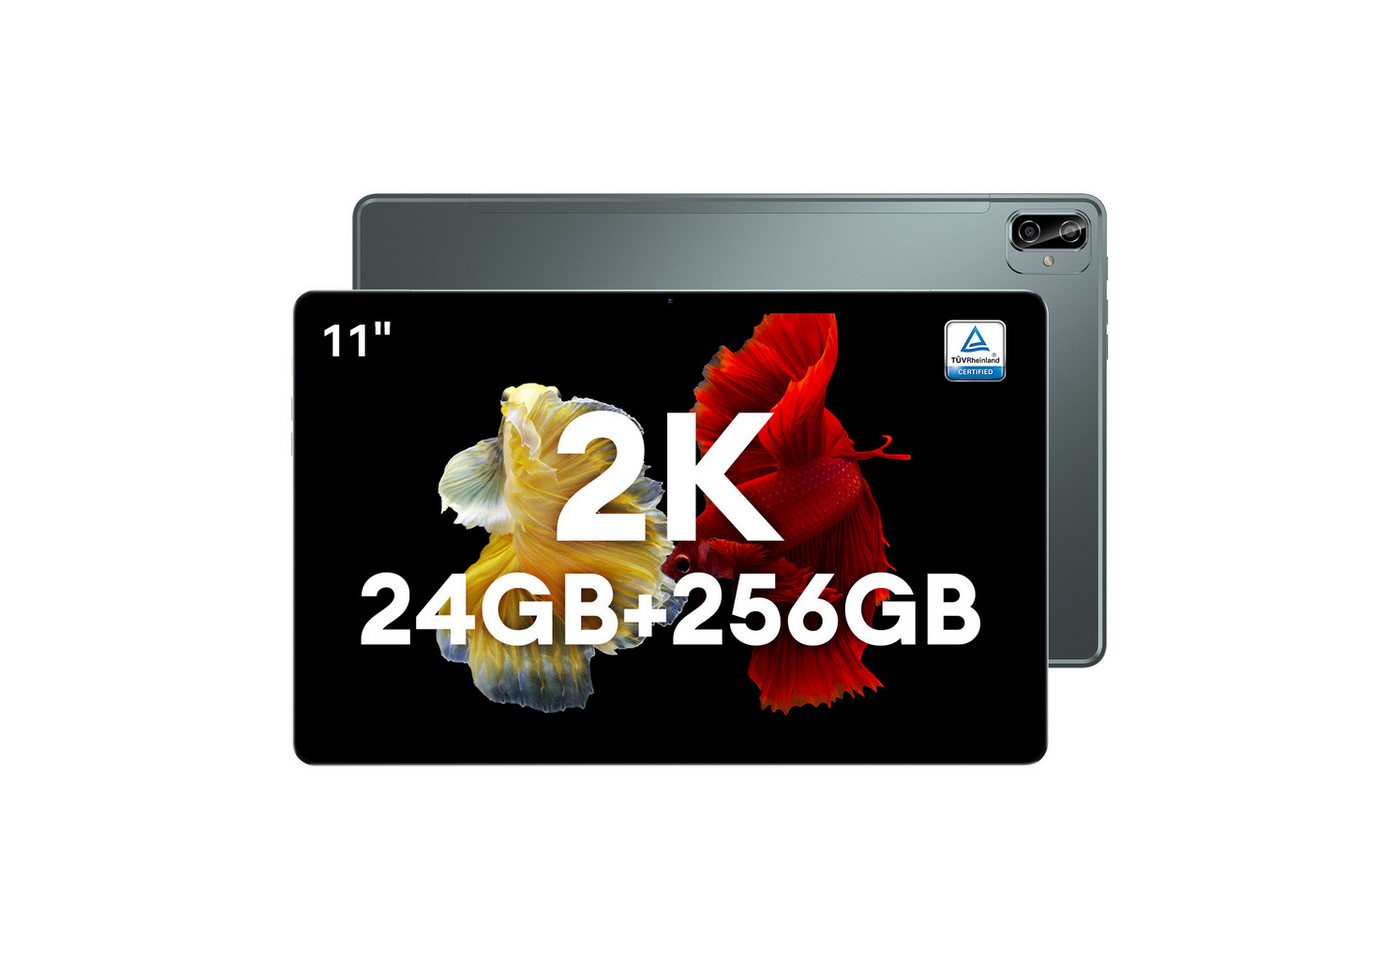 Ulife Headwolf, Hpad3 Ultra, 24GB RAM(12+12GB erweiterbar), 256GB ROM Tablet (11, Android 12, 2G, 3G, 4G, 8MP+20MP+5MP Al Kamera, 8500mAh Akku)" von Ulife